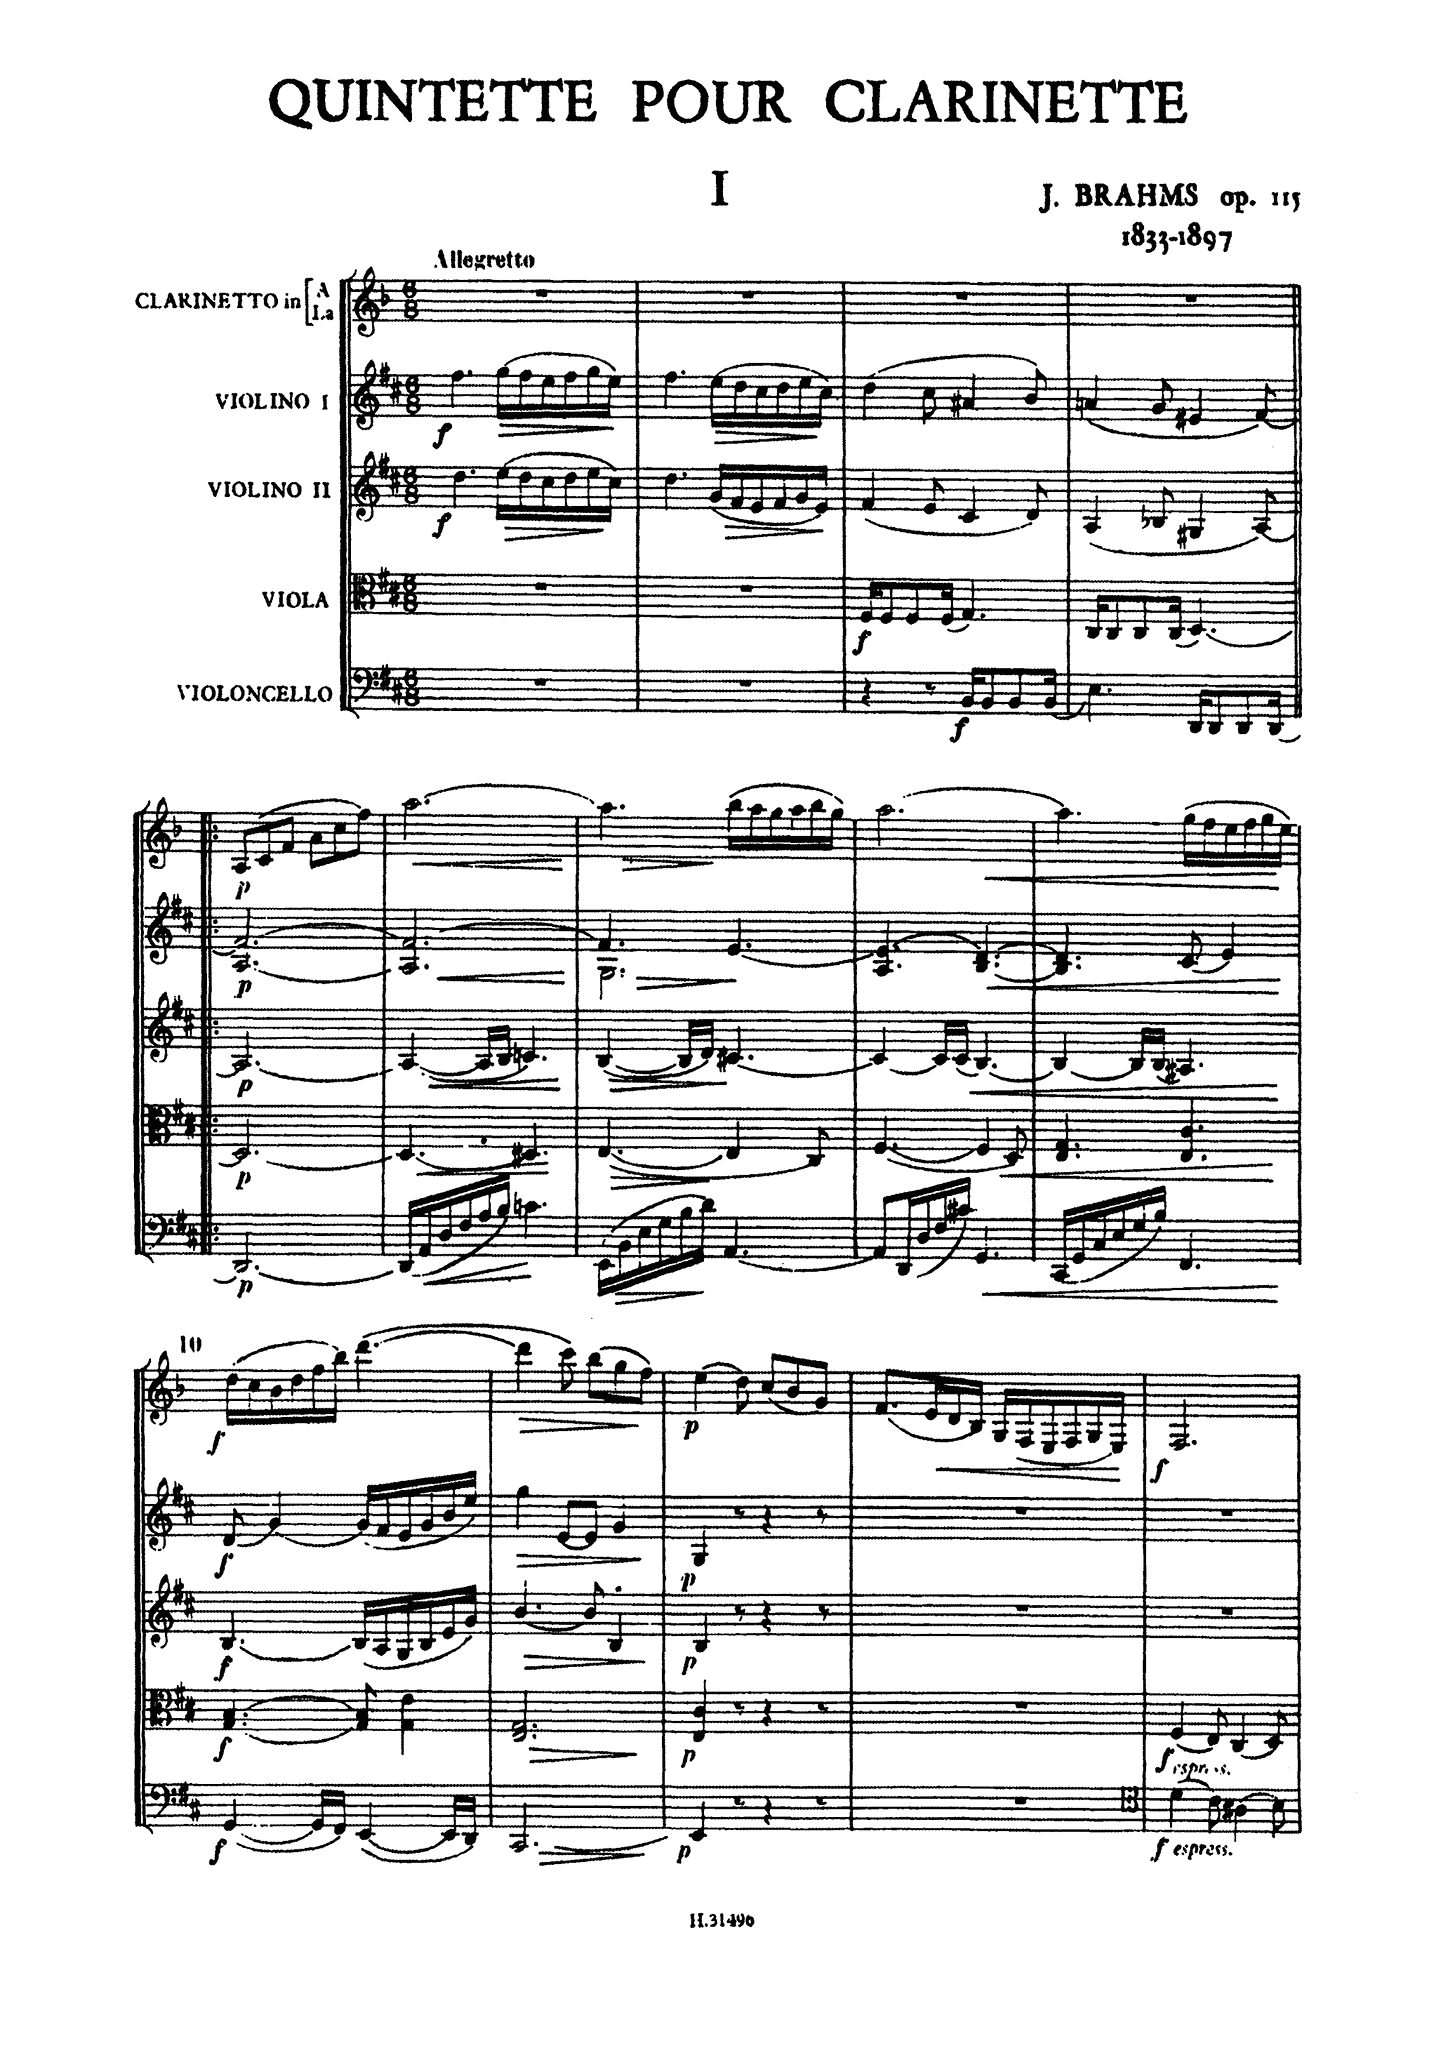 Brahms Clarinet Quintet, Op. 115 pocket score - Movement 1